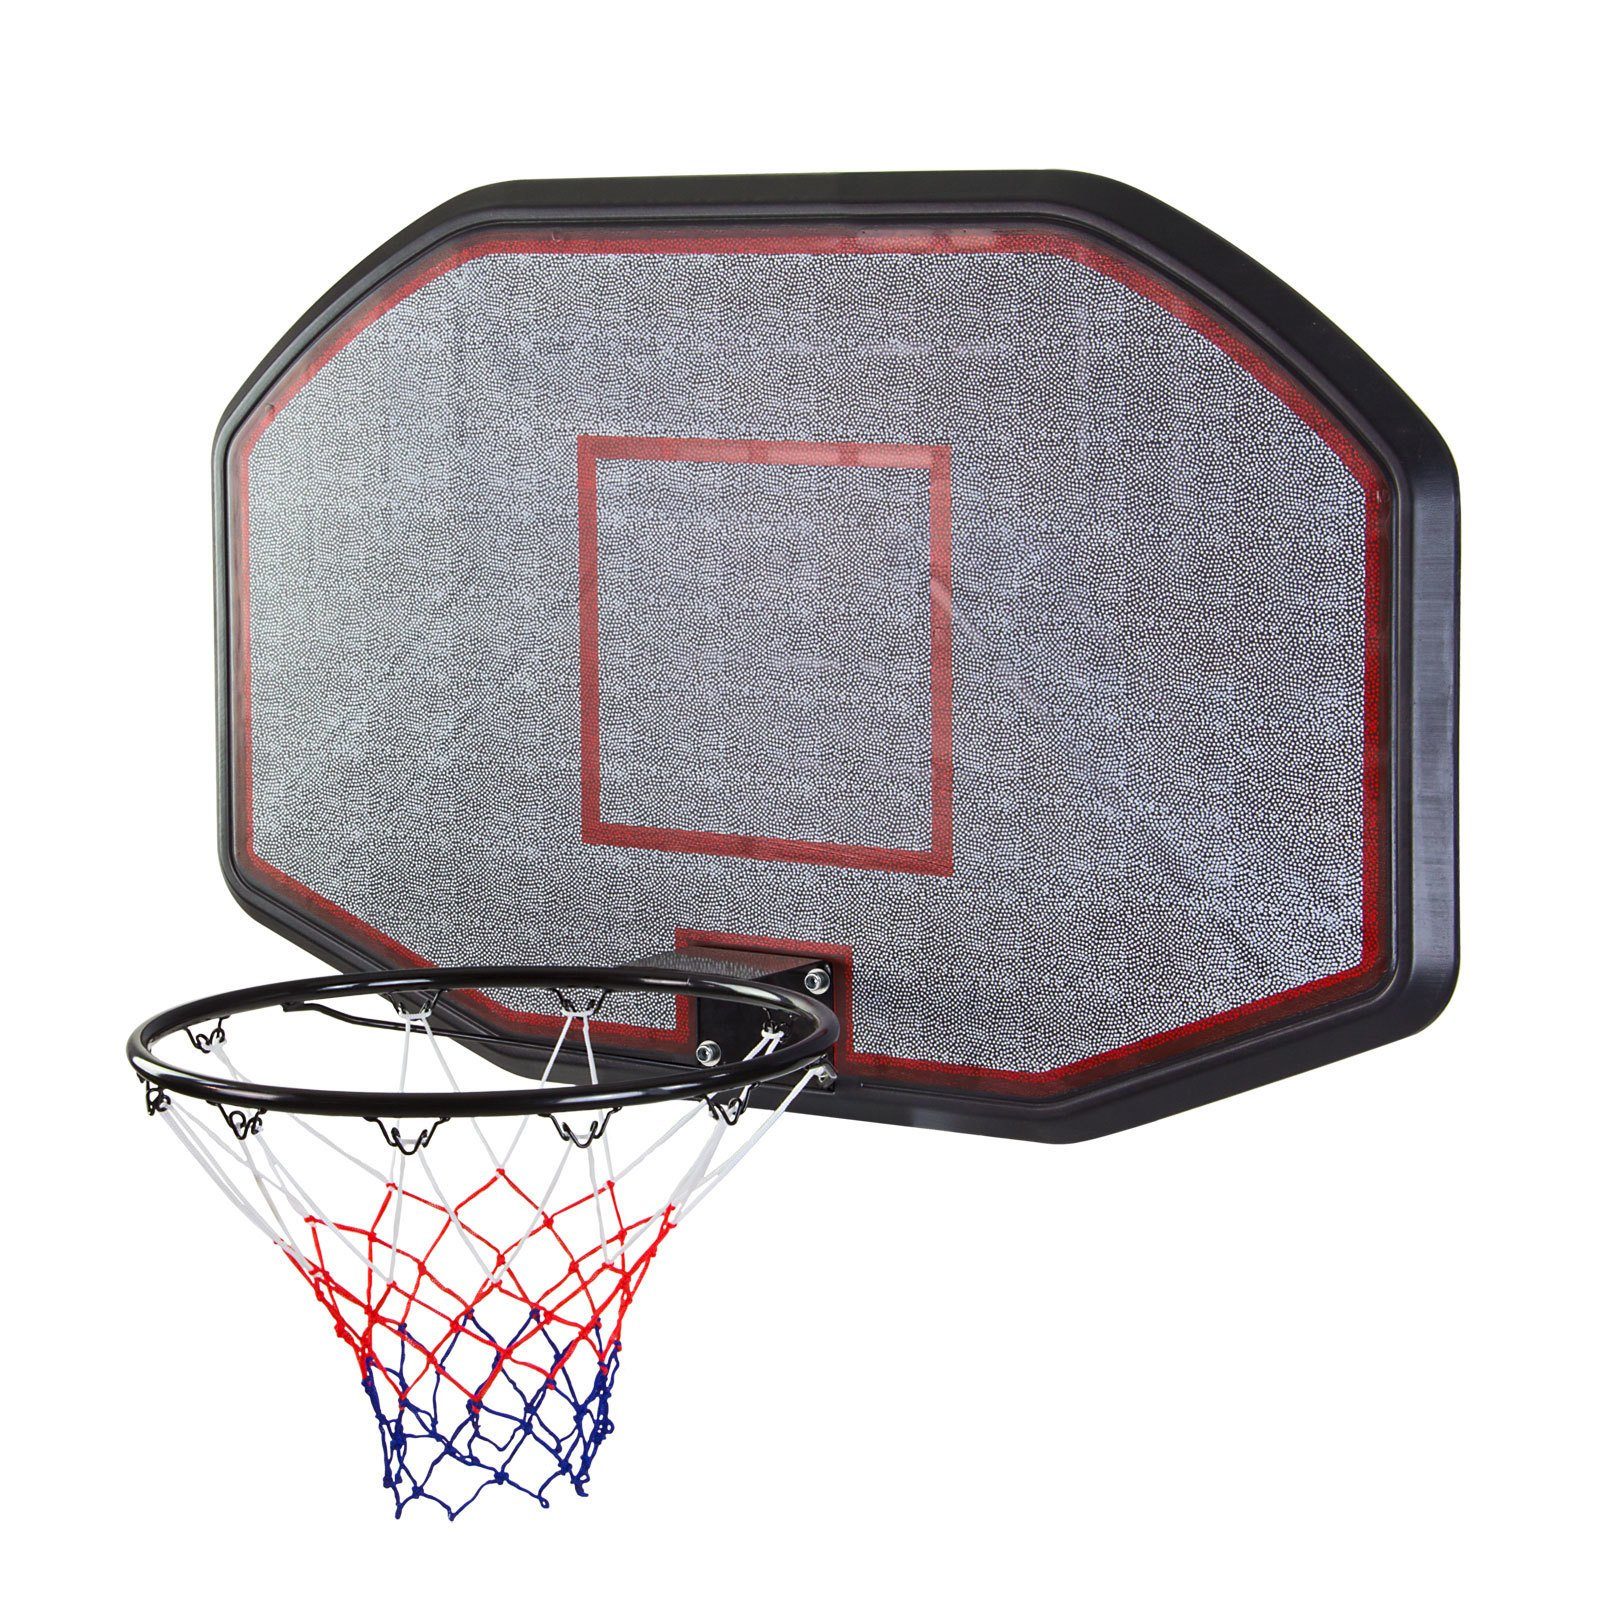 DEMA Basketballkorb Basketballkorb - Basketballbrett zum Hängen